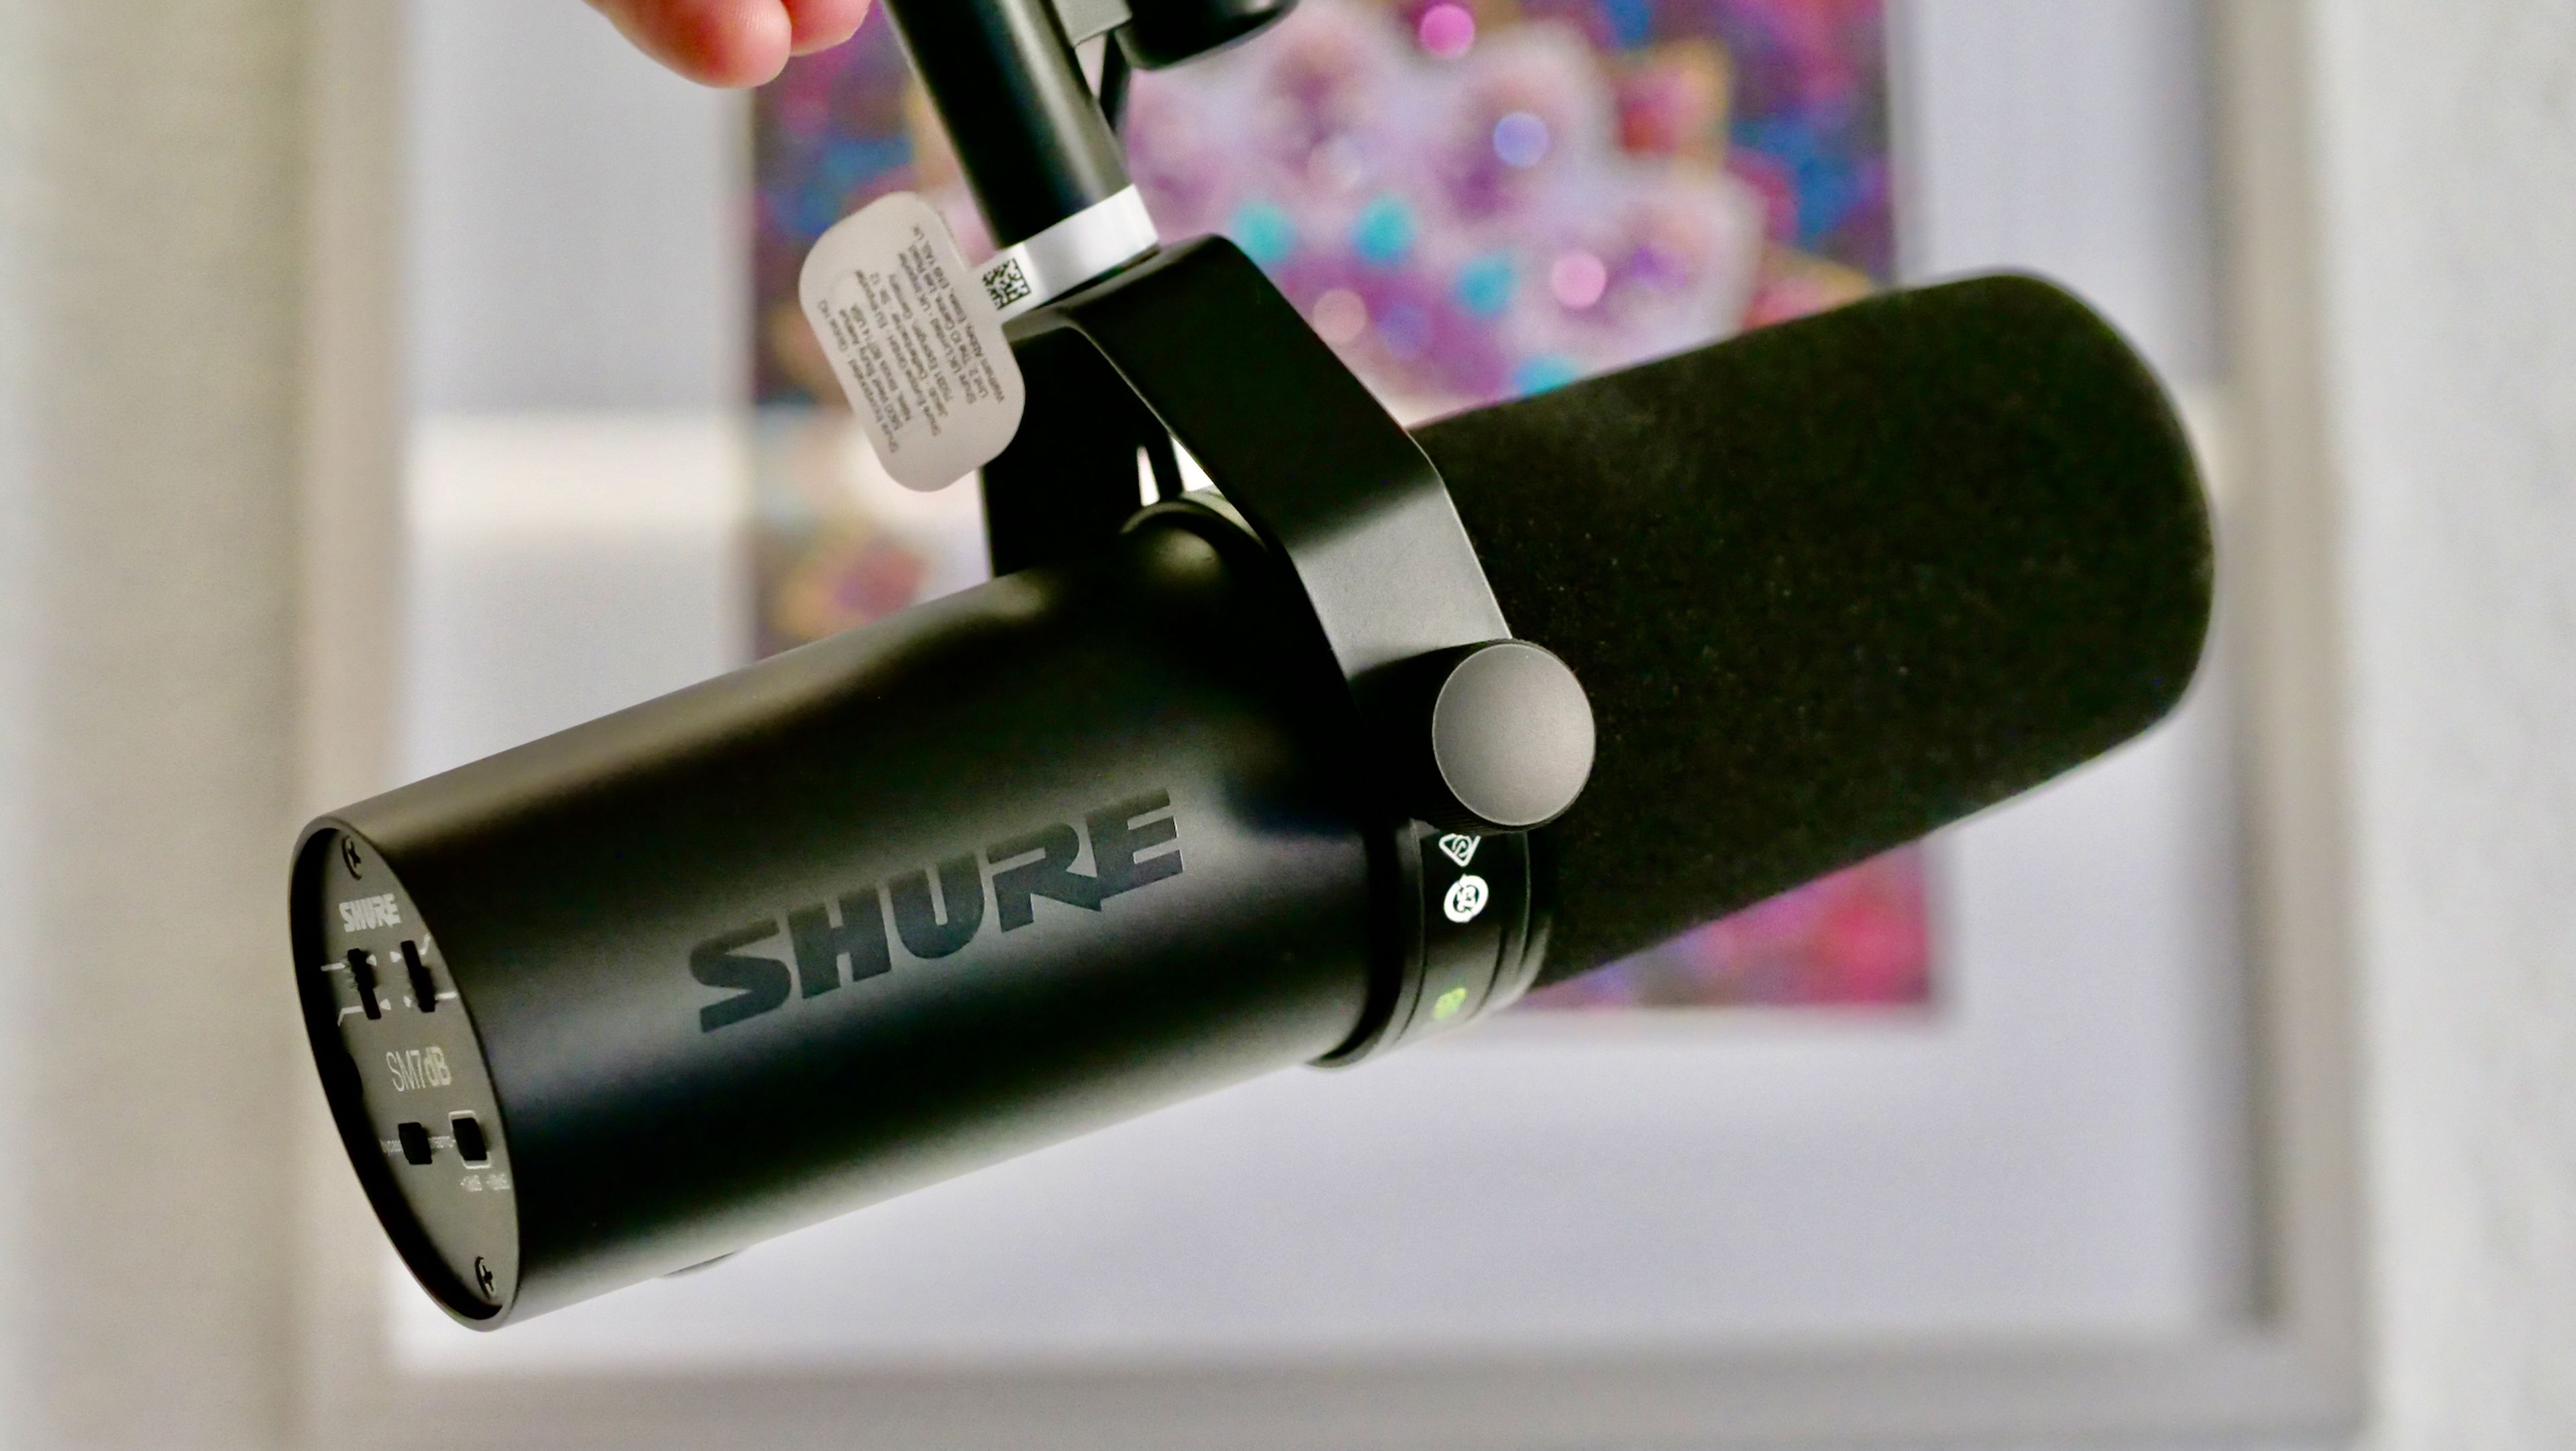 He probado el Shure SM7dB, el micro que usan la mayoría de streamers